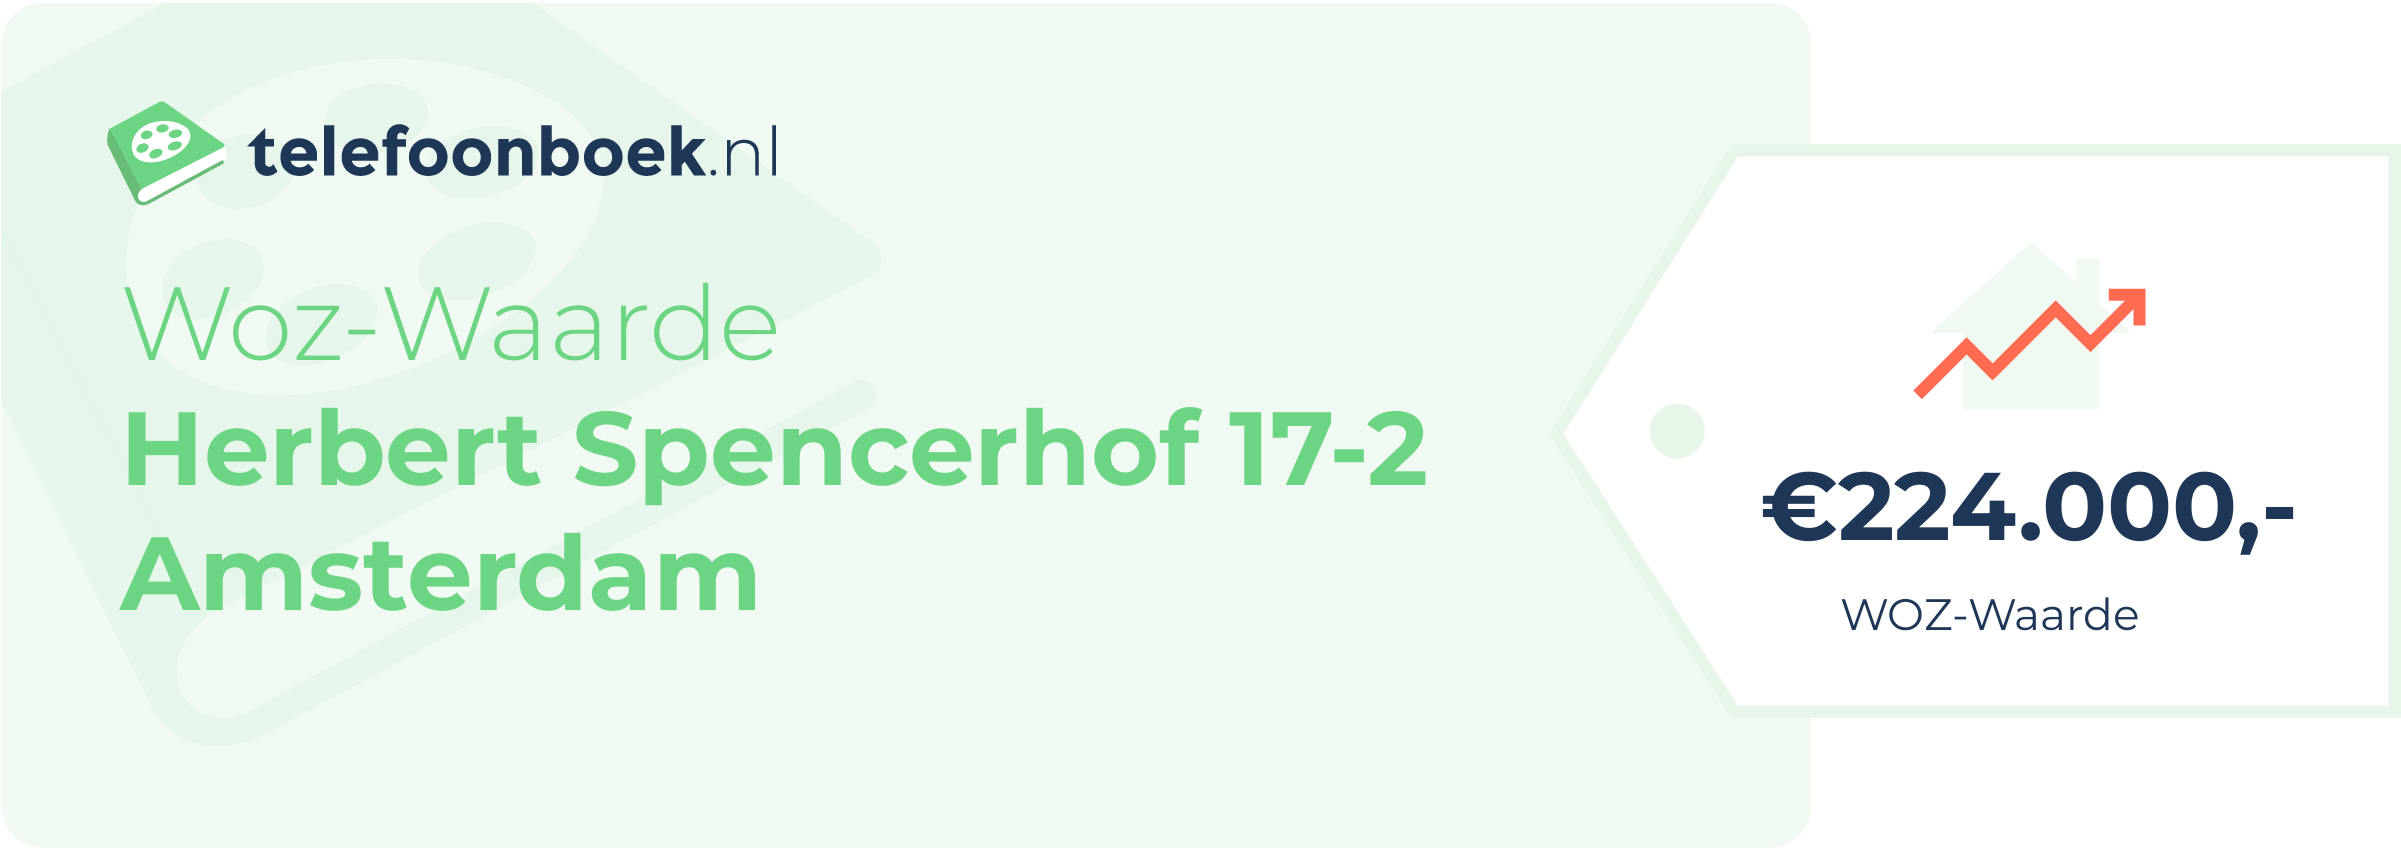 WOZ-waarde Herbert Spencerhof 17-2 Amsterdam